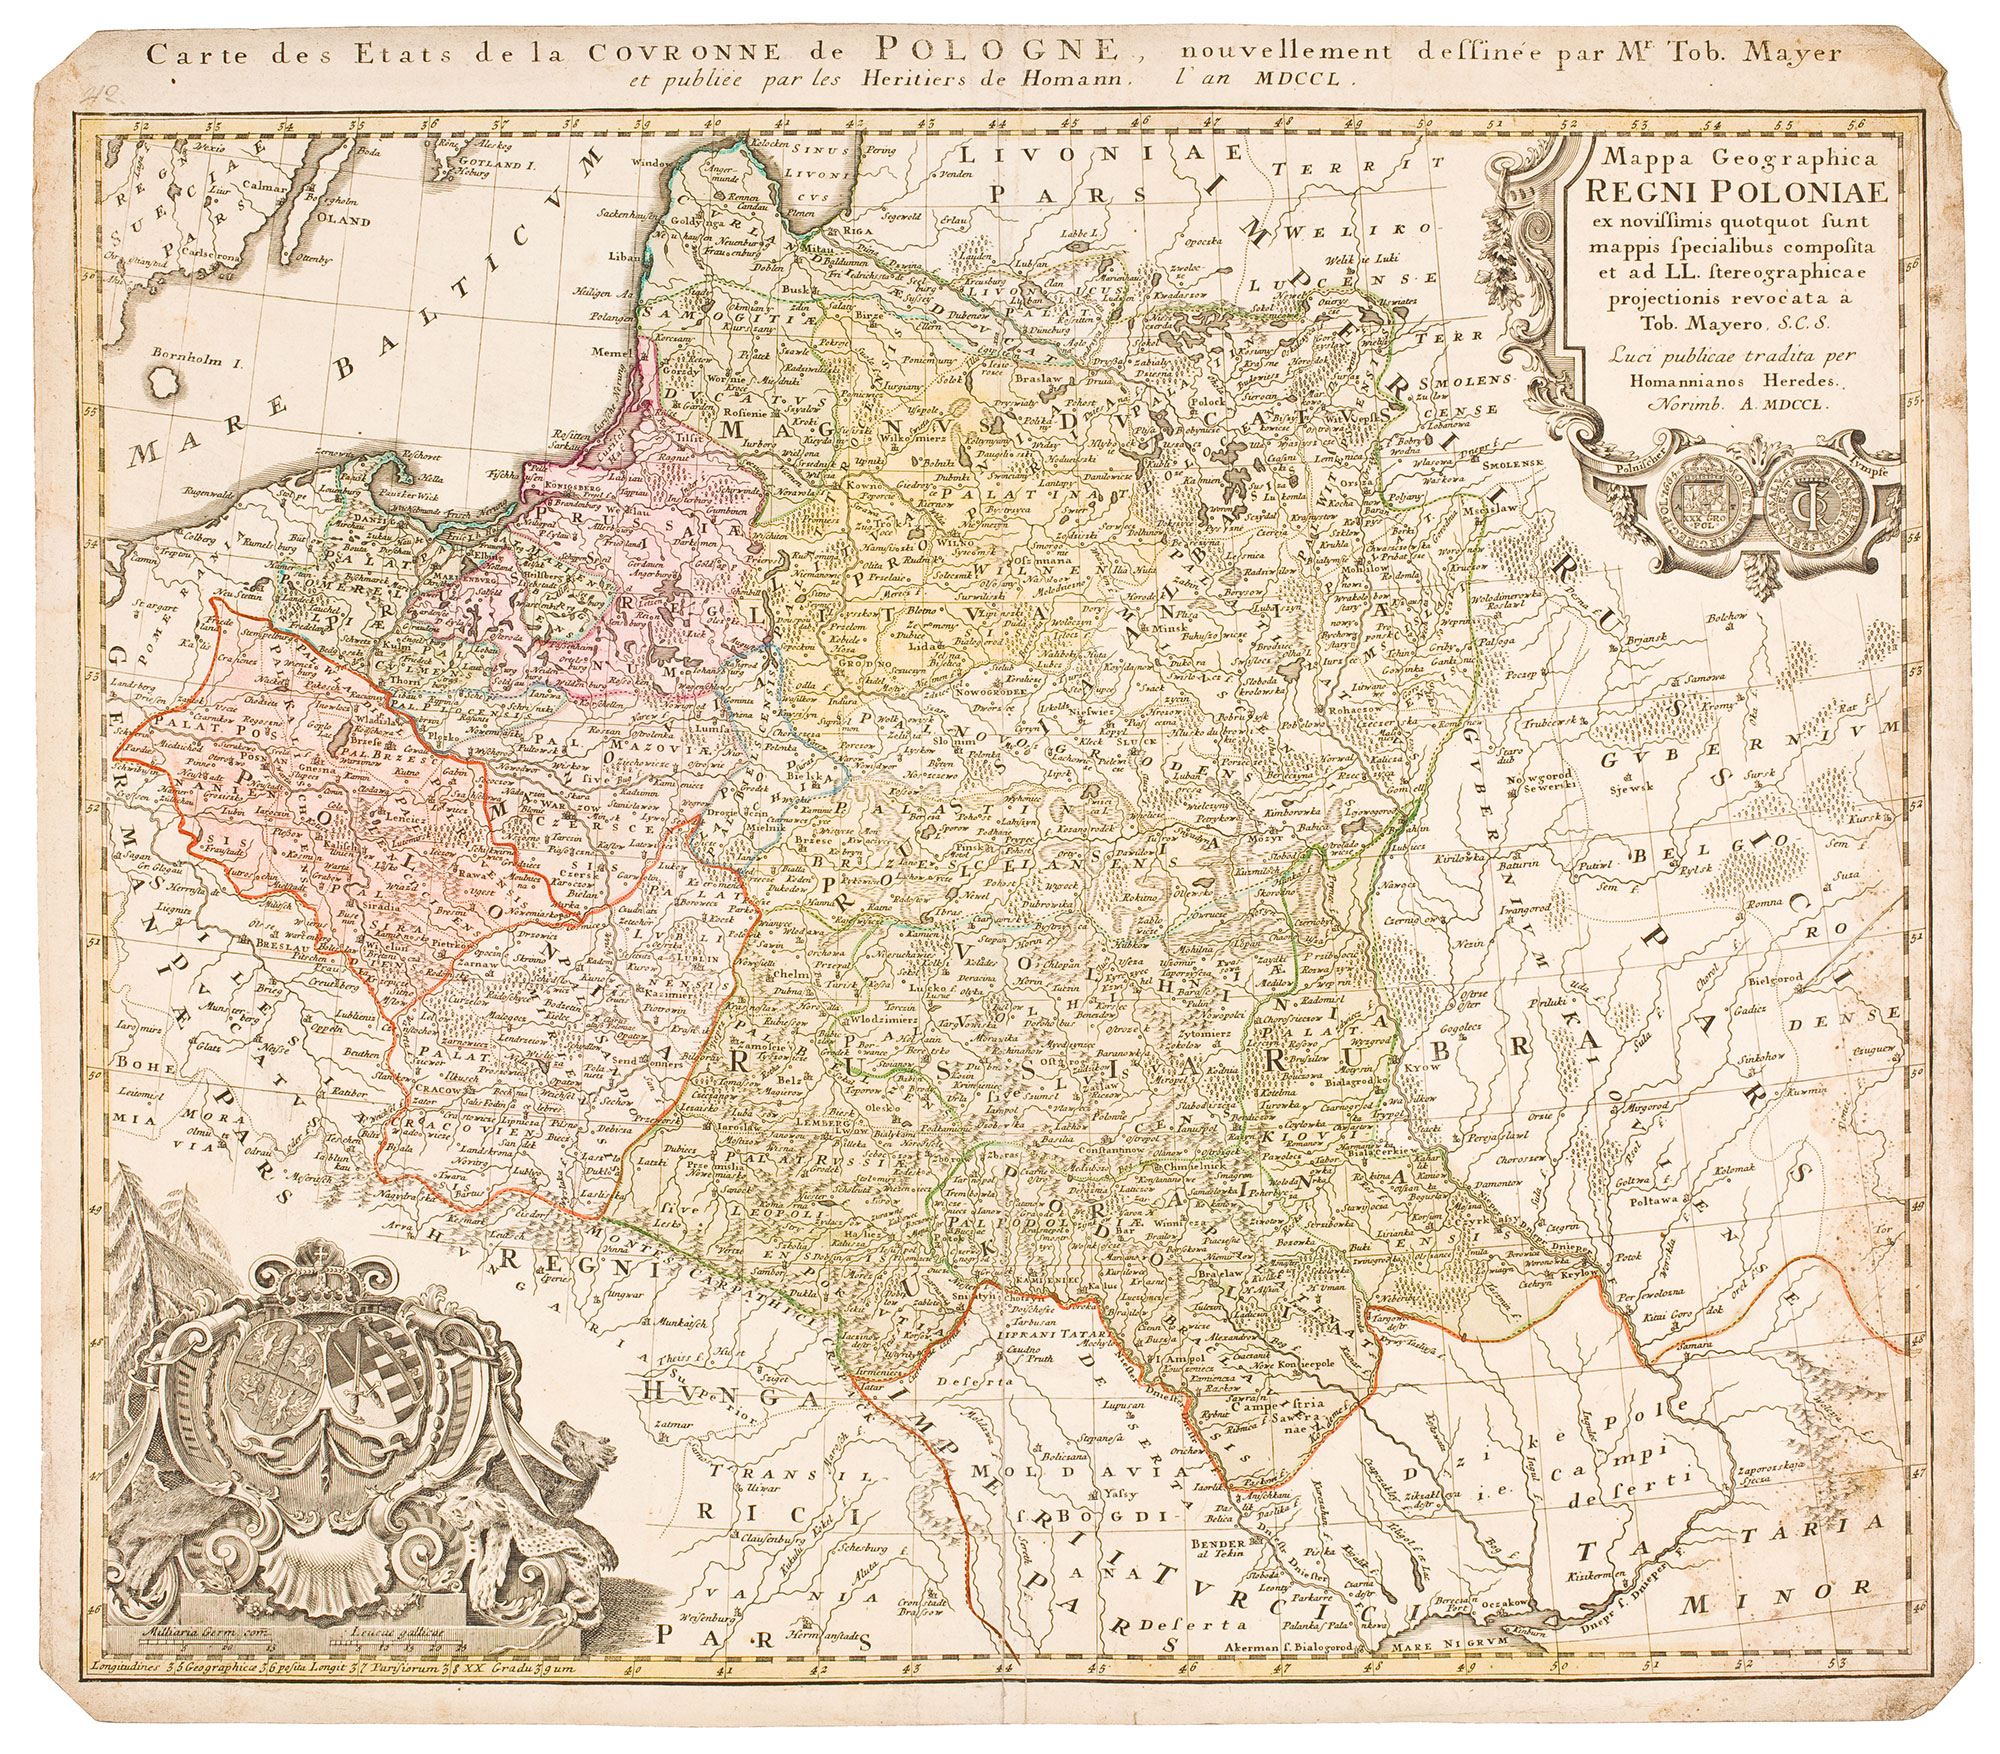 Królestwo Polski i Wielkie Księstwo Litewskie. Homannische Erben, Norymberga 1750